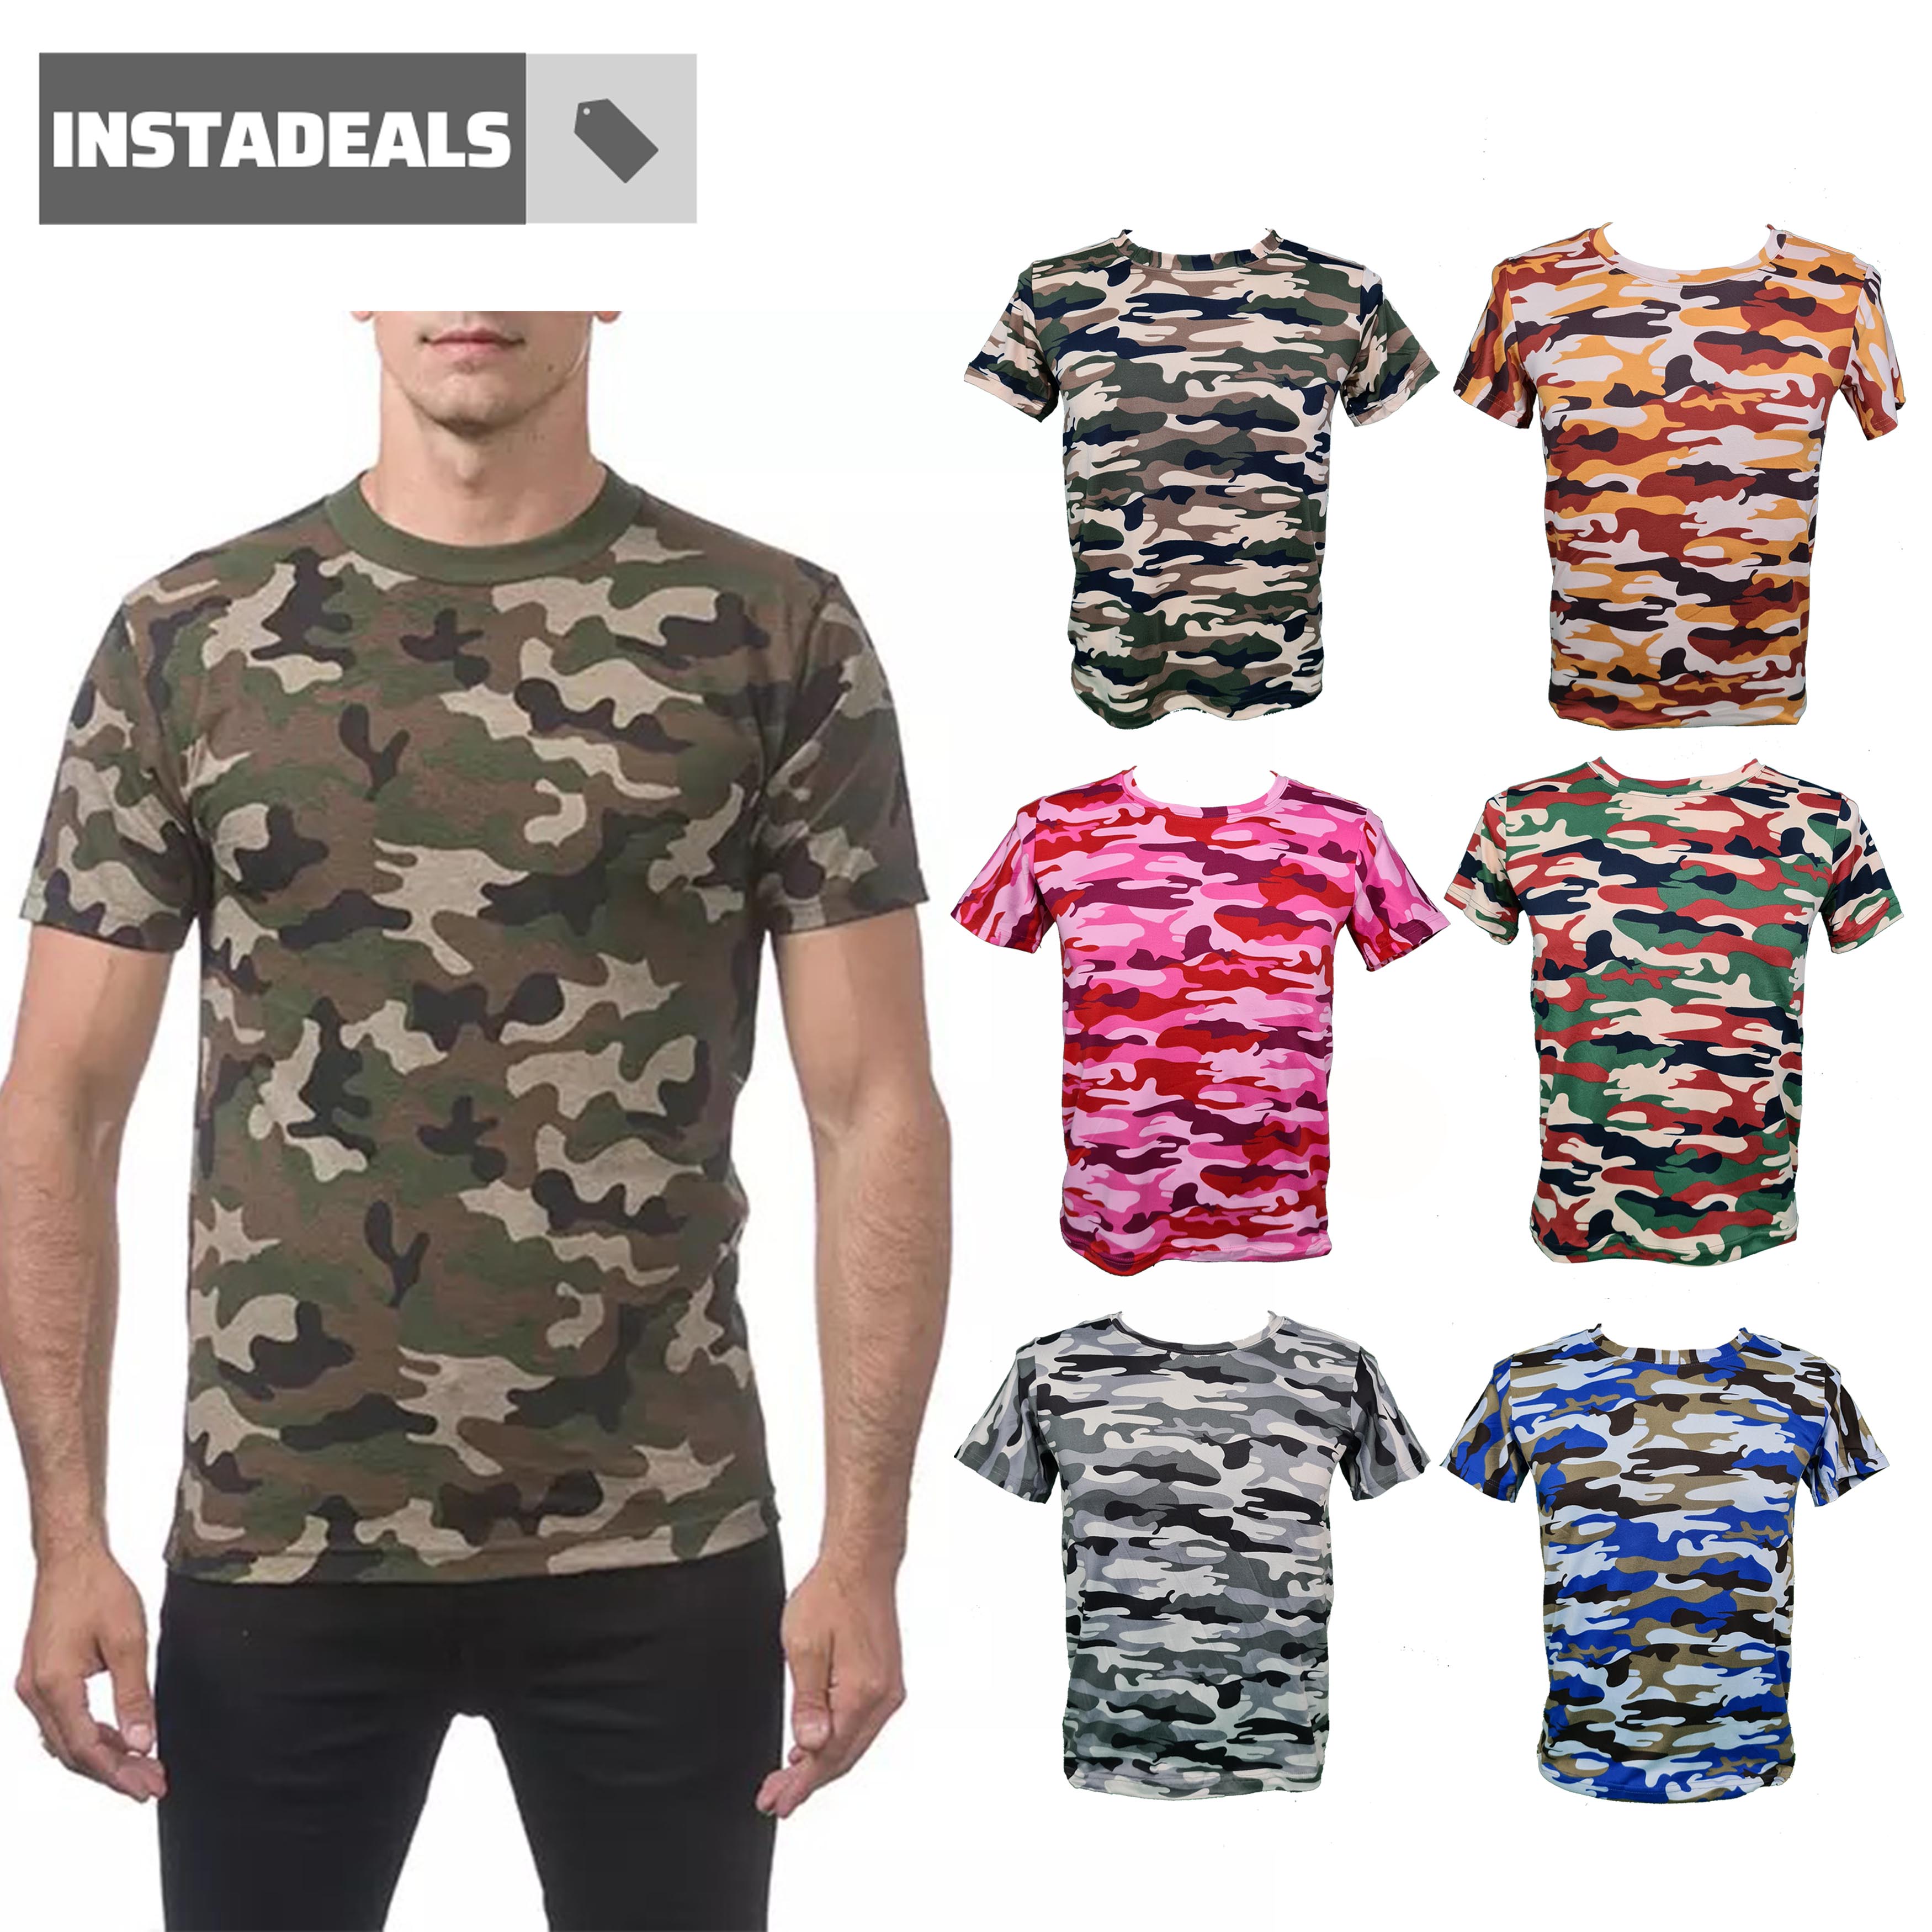 Unisex Fashion Camouflage Tshirt, Army Military Shirt, Malambot, High  Quality Fashion Shirt